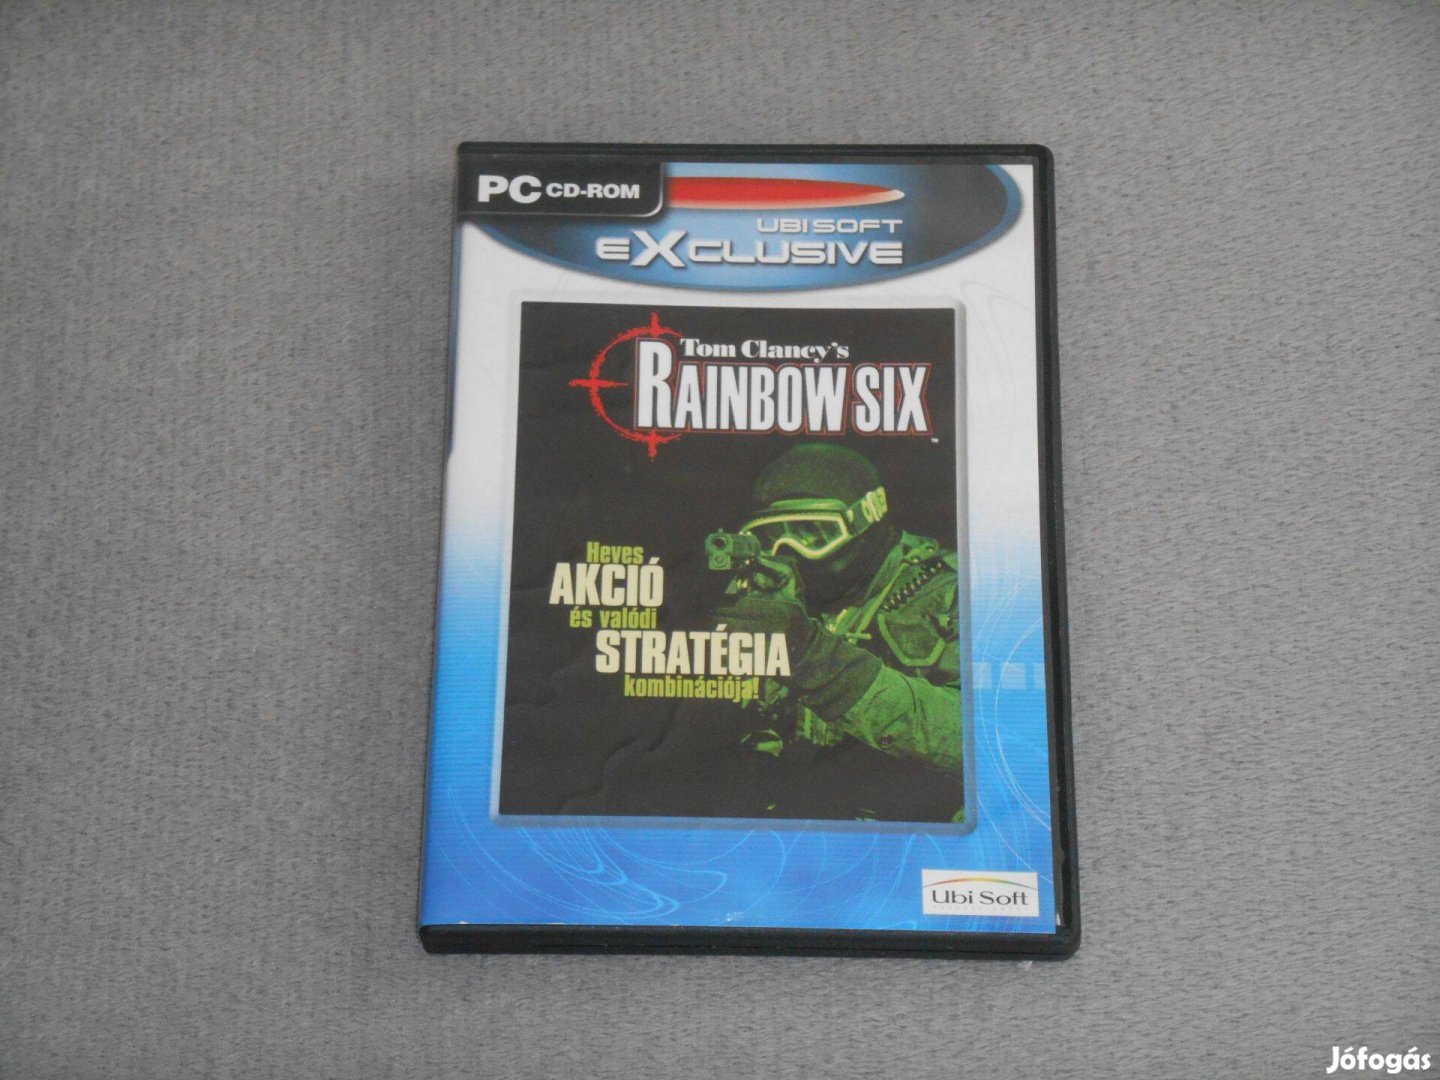 Tom Clancy's Rainbow Six Számítógépes PC játék